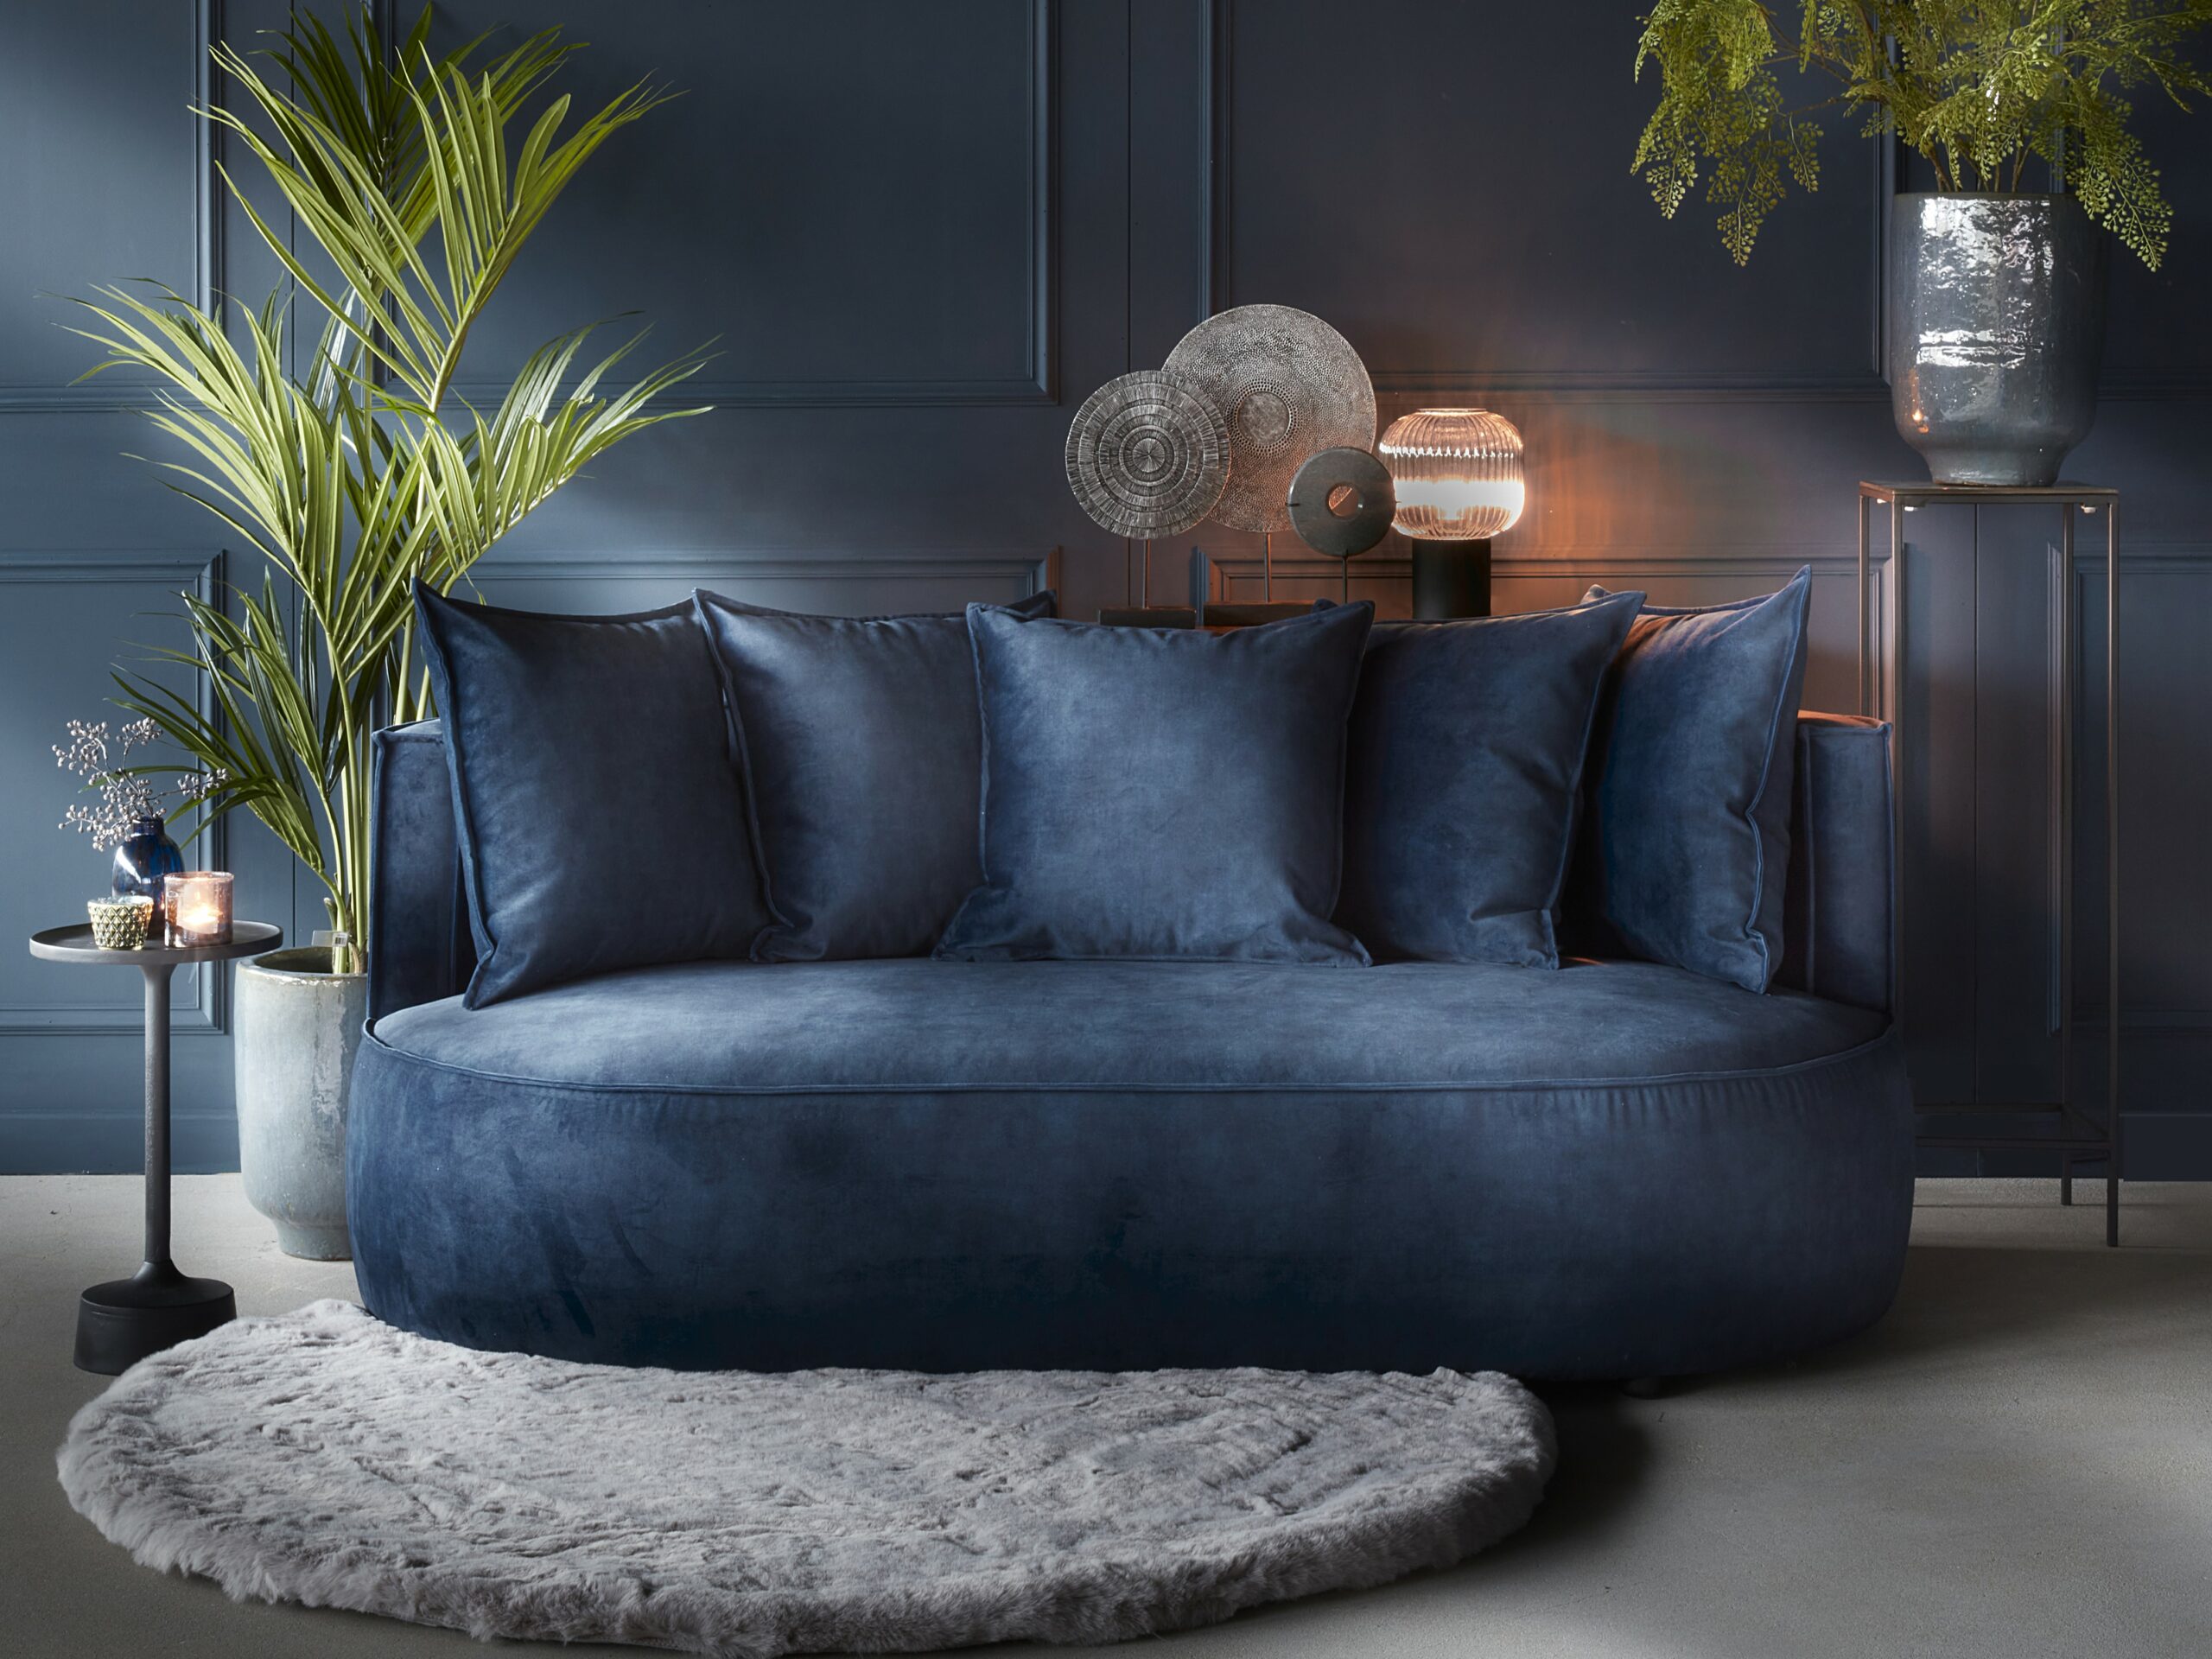 Sametová tmavě modrá dvoumístná pohovka s kulatými tvary a odpovídajícími opěradly. Stylizované s kulatým kobercem a rostlinami.